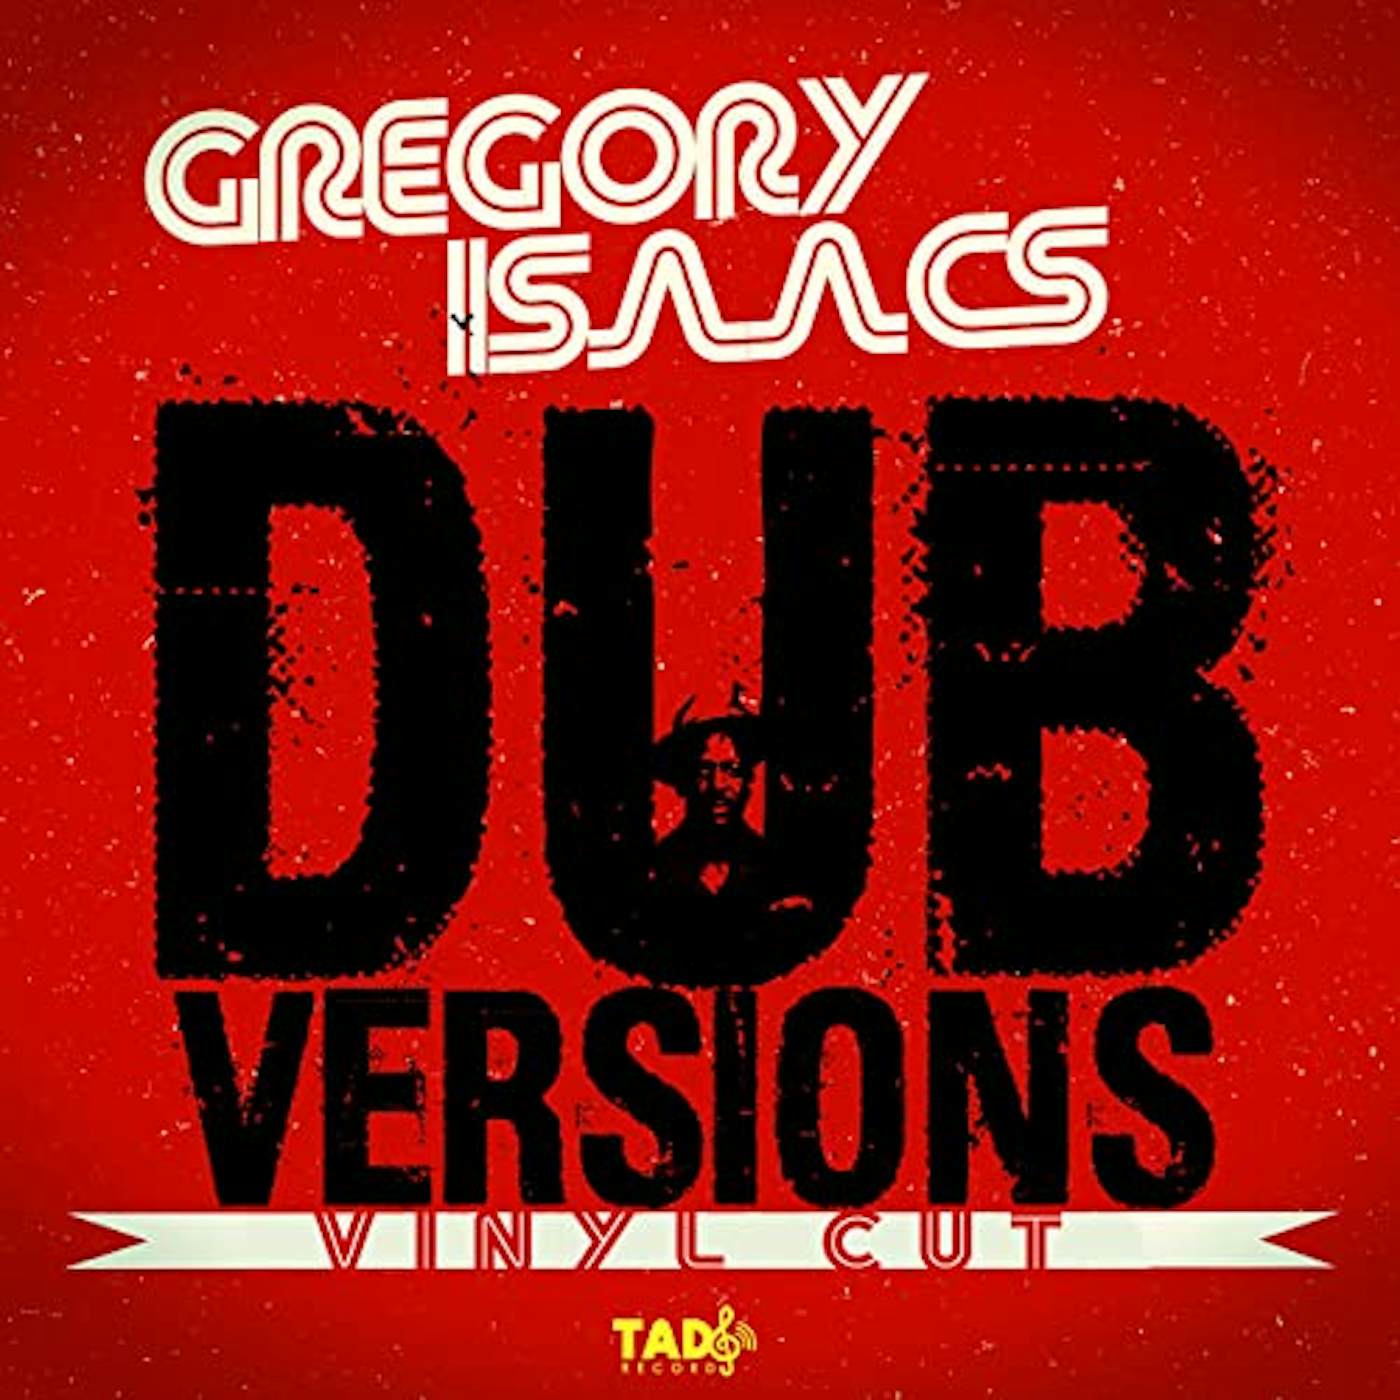 Gregory Isaacs DUB VERSIONS (VINYL CUT) Vinyl Record